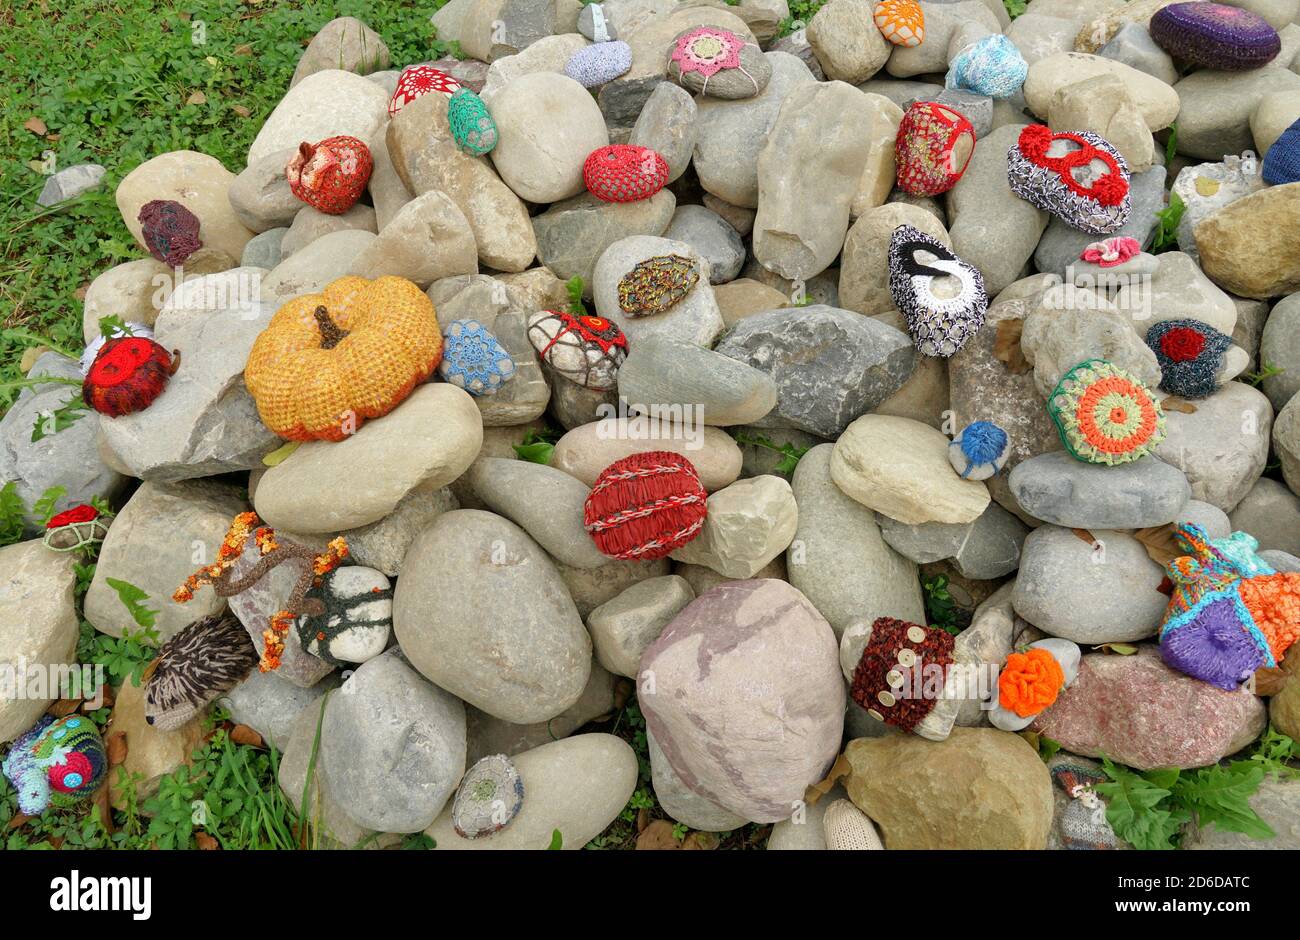 Ein Haufen von glatten ovalen Steinen. Einige von ihnen sind von gehäkelten Dekoration von verschiedenen Stilen und Farben bedeckt. Die kreative Idee macht die Steine einzigartig. Stockfoto